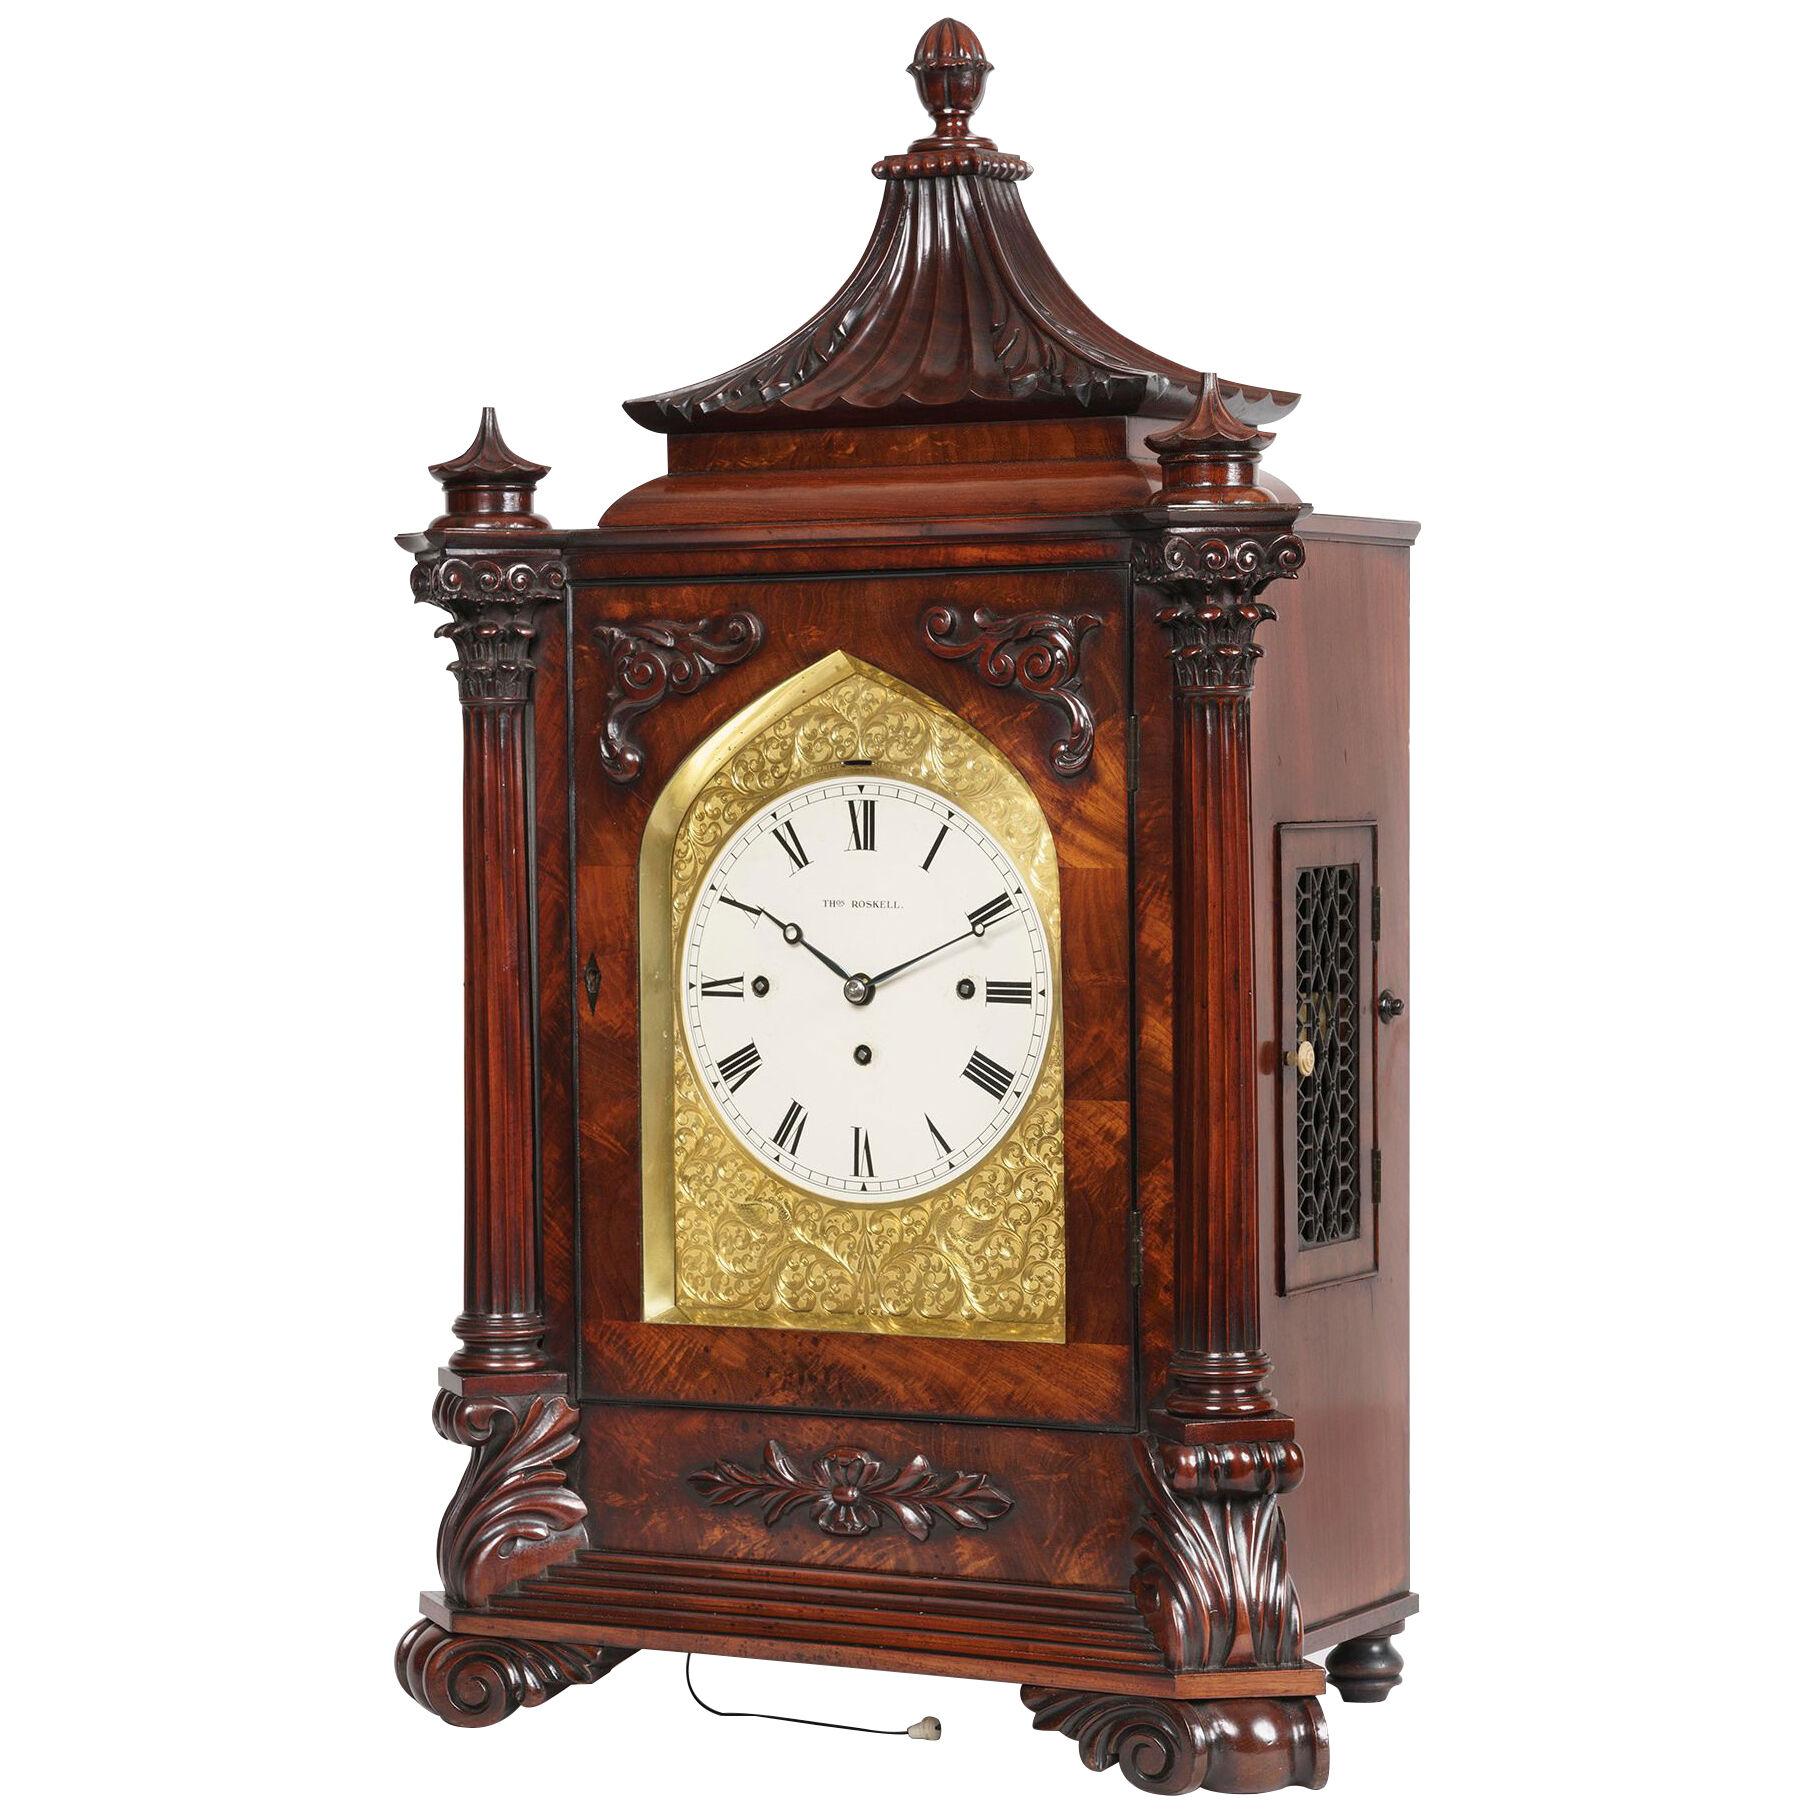  Late Georgian Mahogany Musical Table Clock